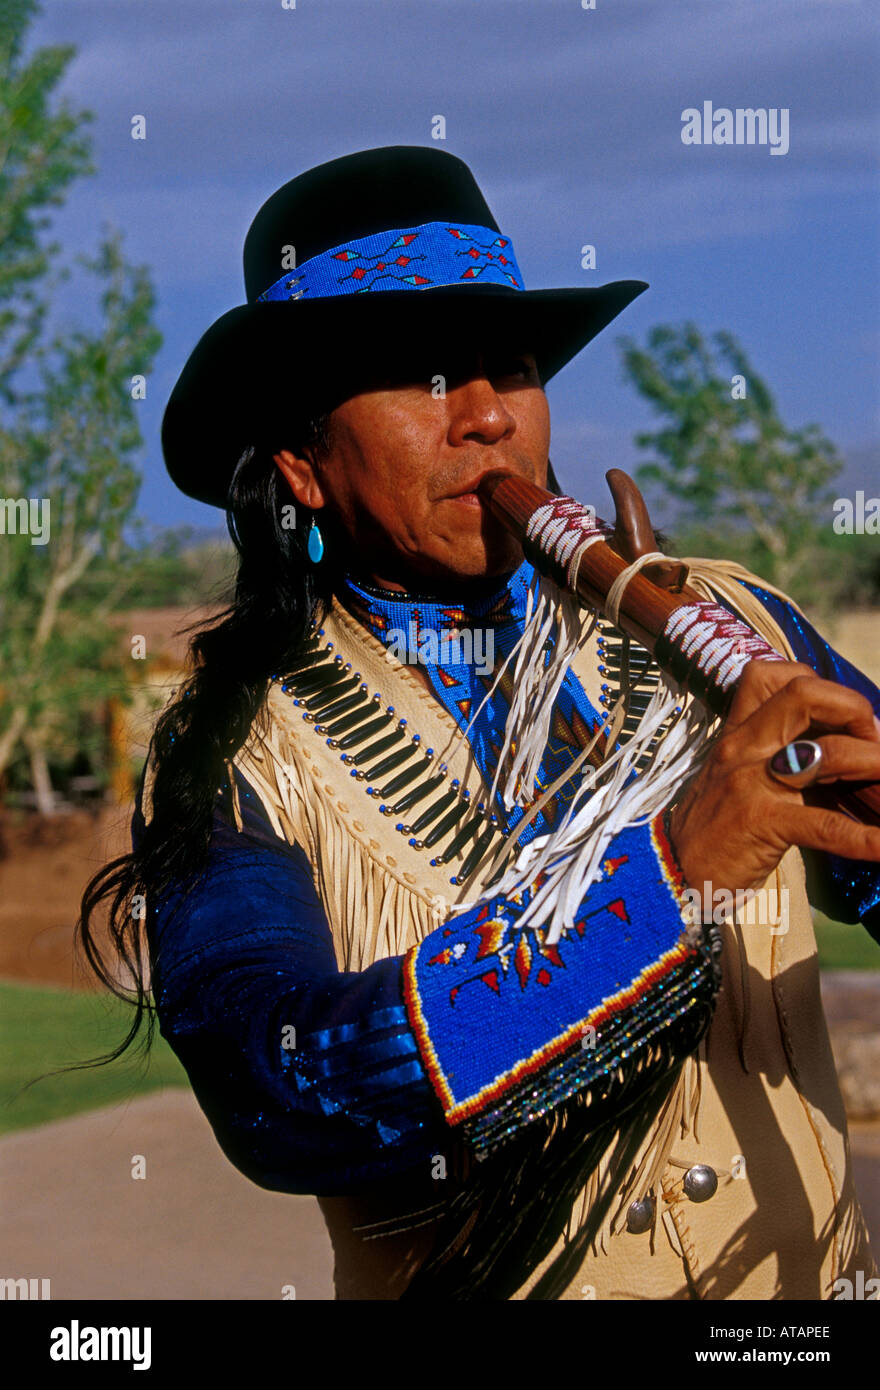 Allenroy Paquin, Native American Indian, Amérindiens, artiste, musicien, jouant de la flûte, joueur de flûte, flûtiste, flûtiste, New Mexico, United States Banque D'Images